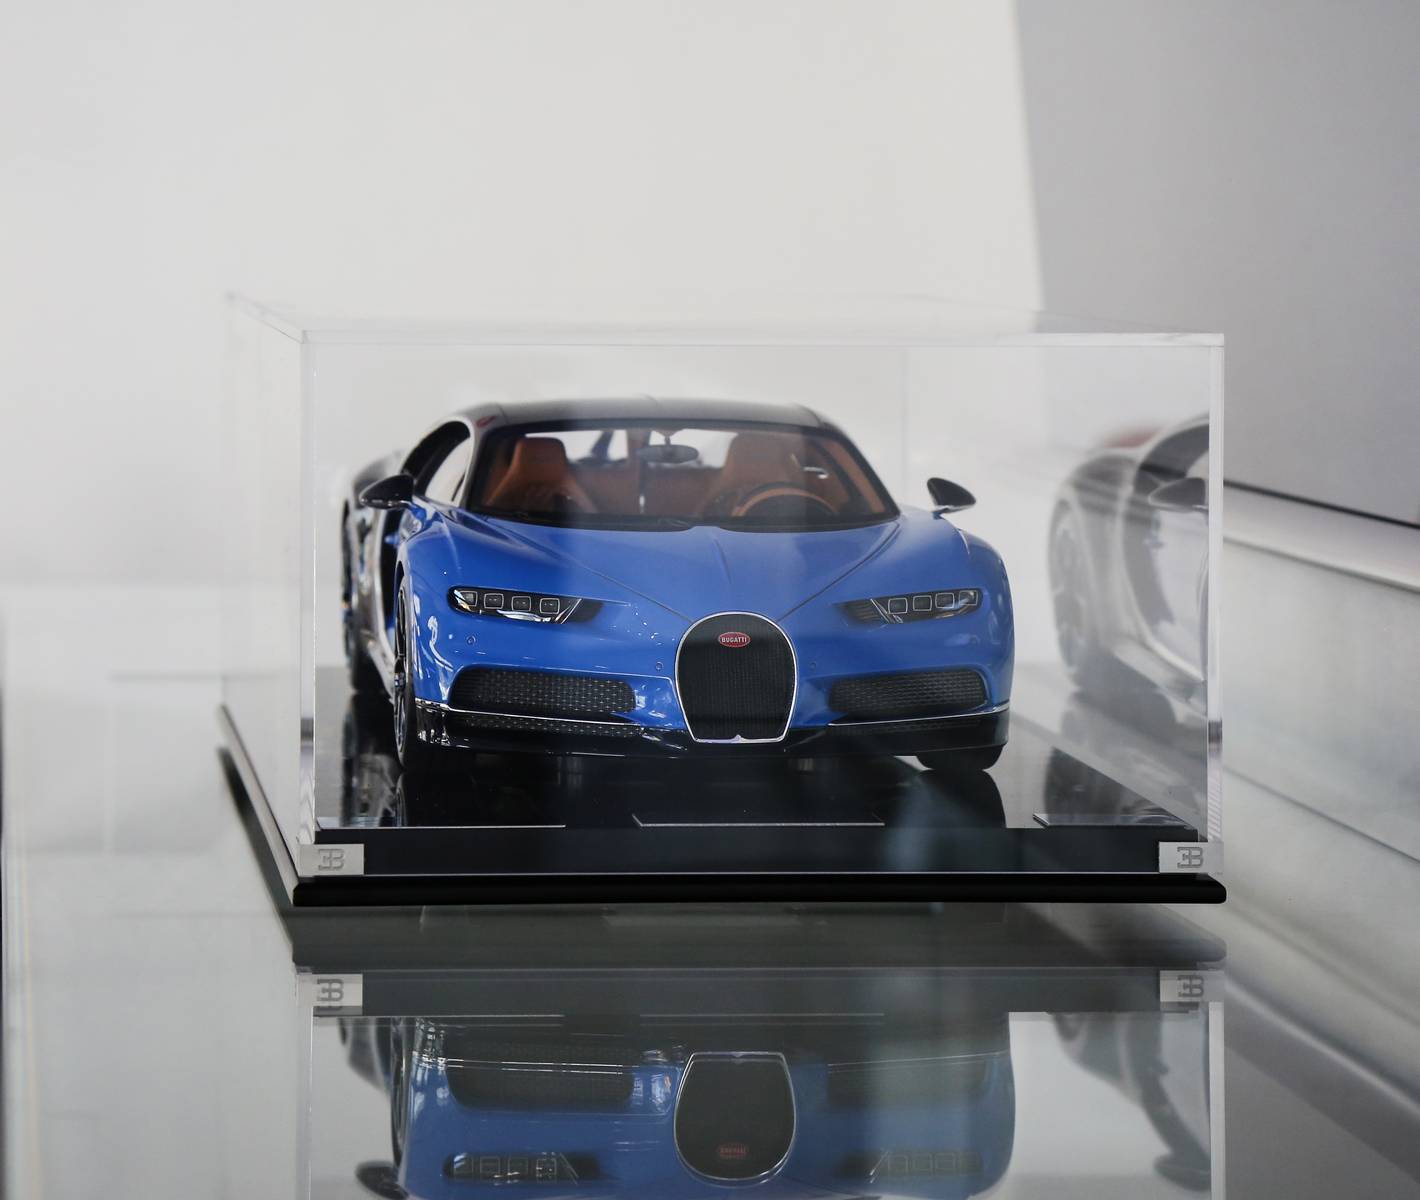 
Mô hình Bugatti Chiron
